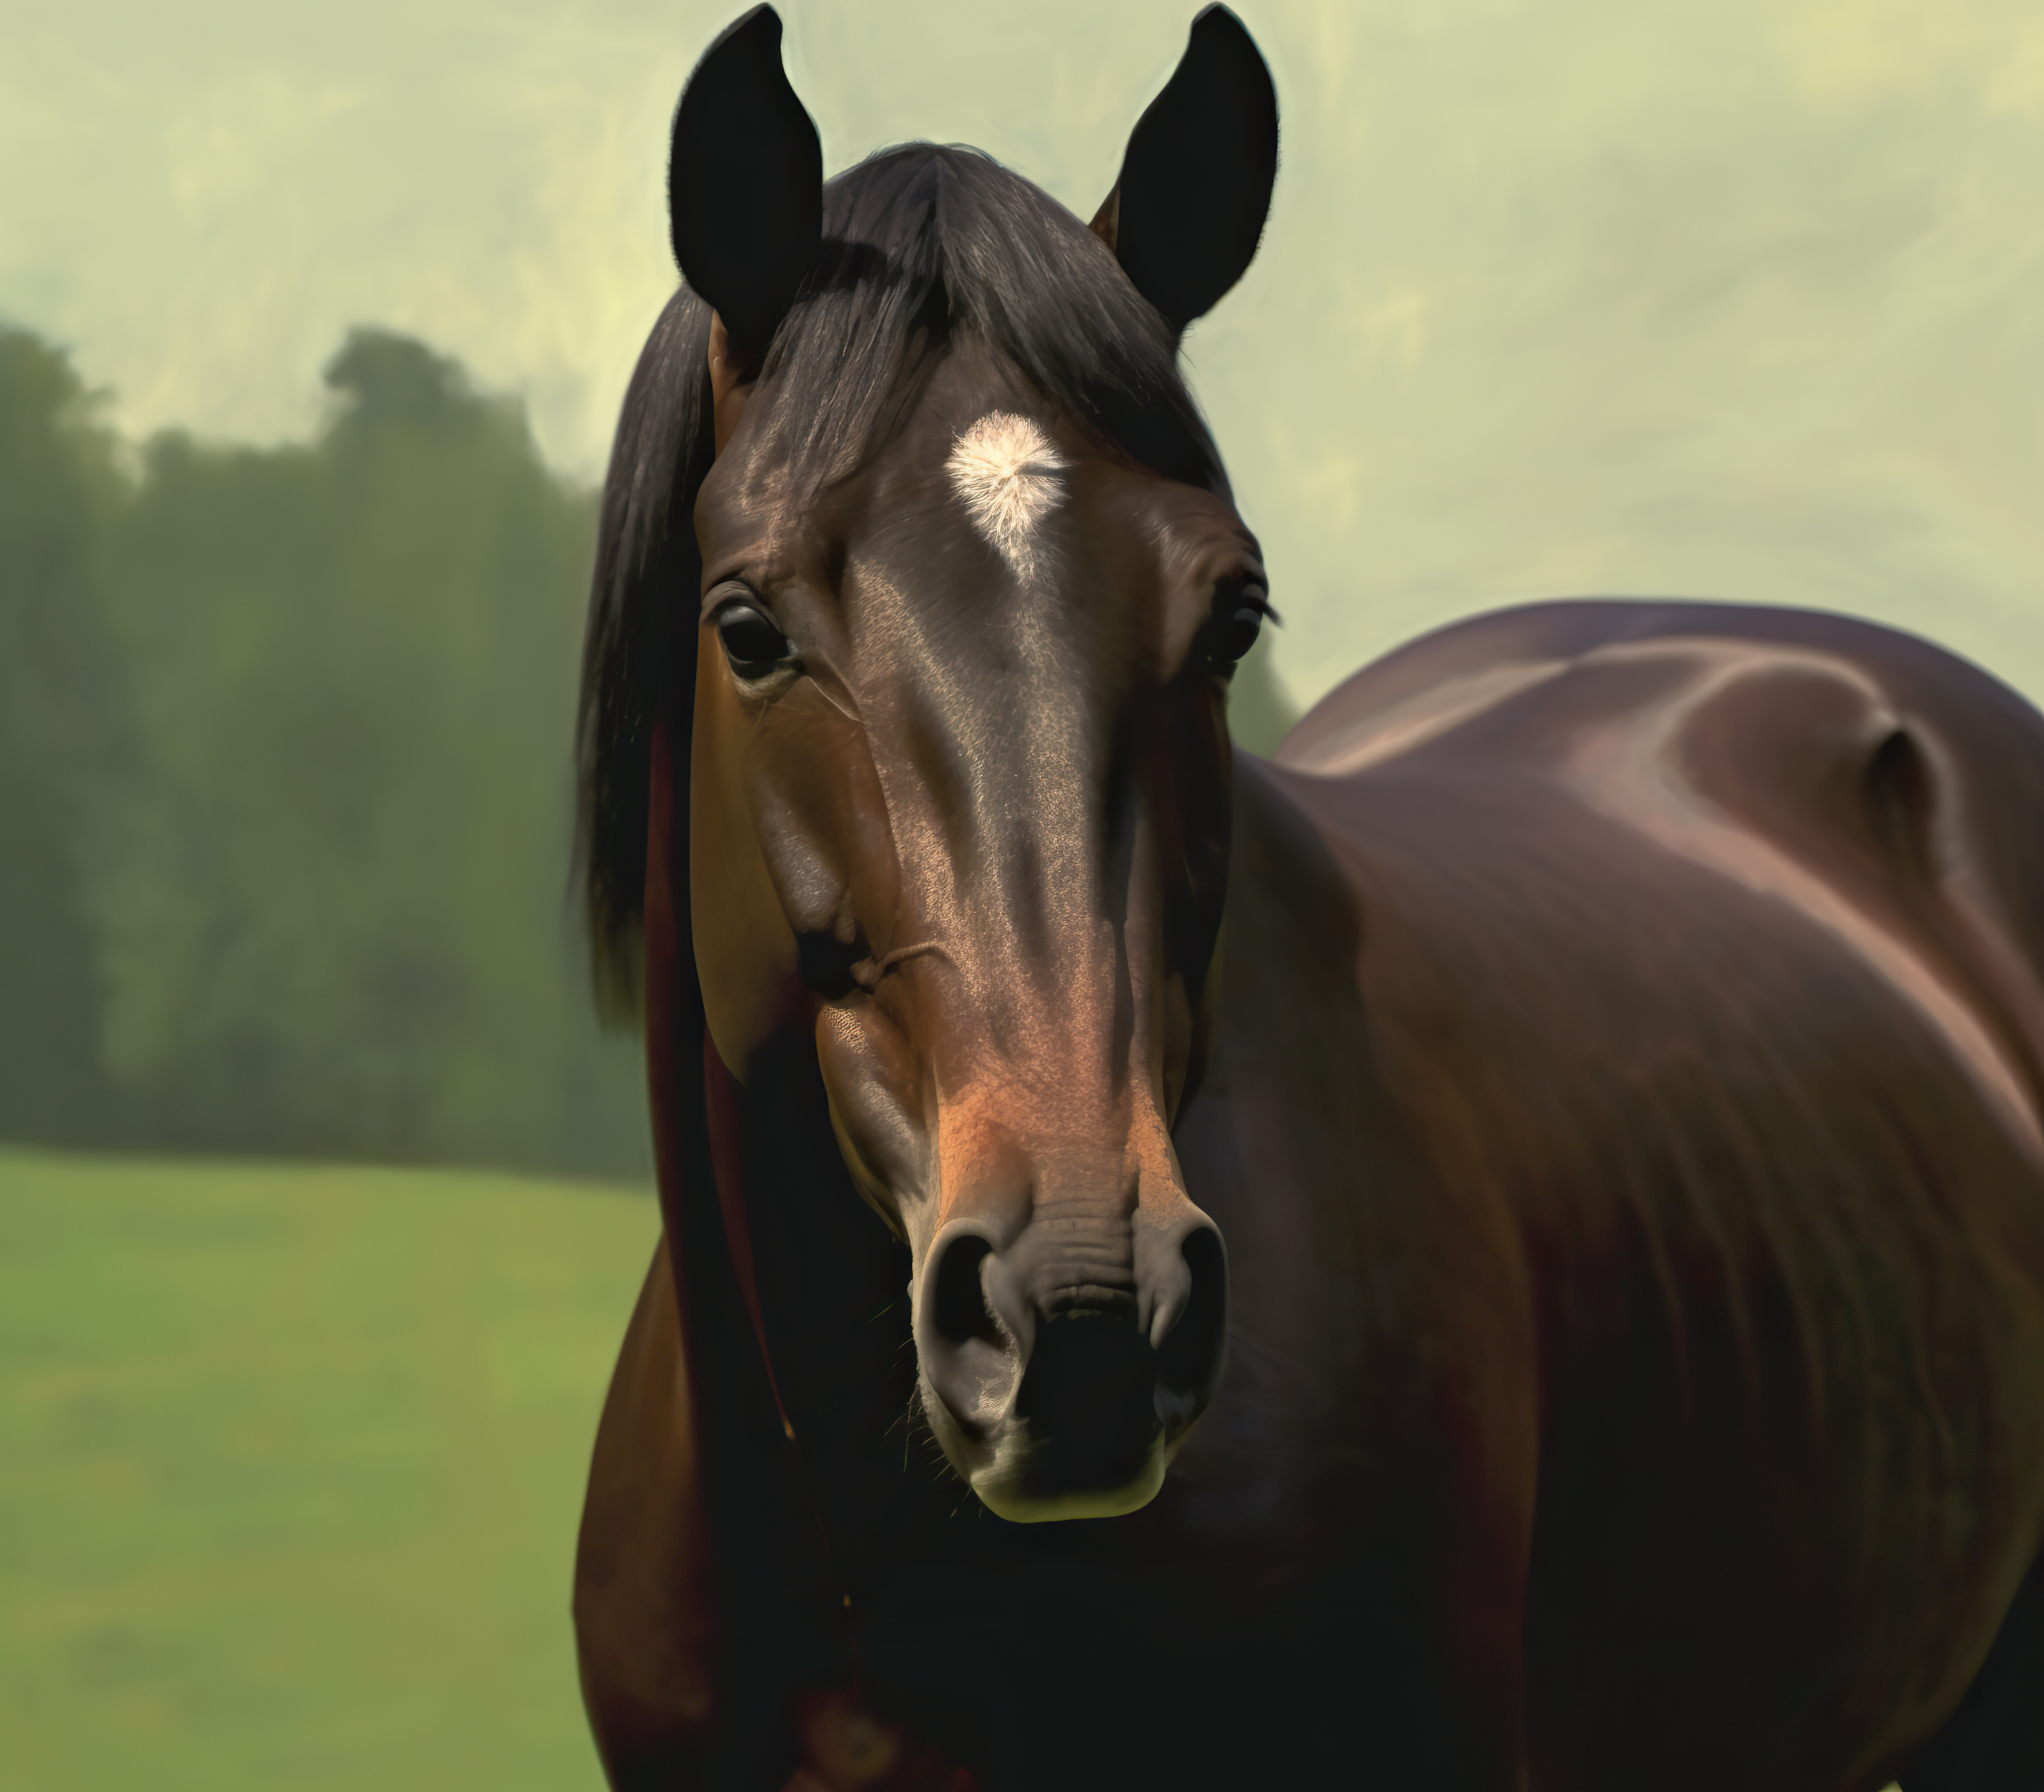 dark brown horse standing on grassy field